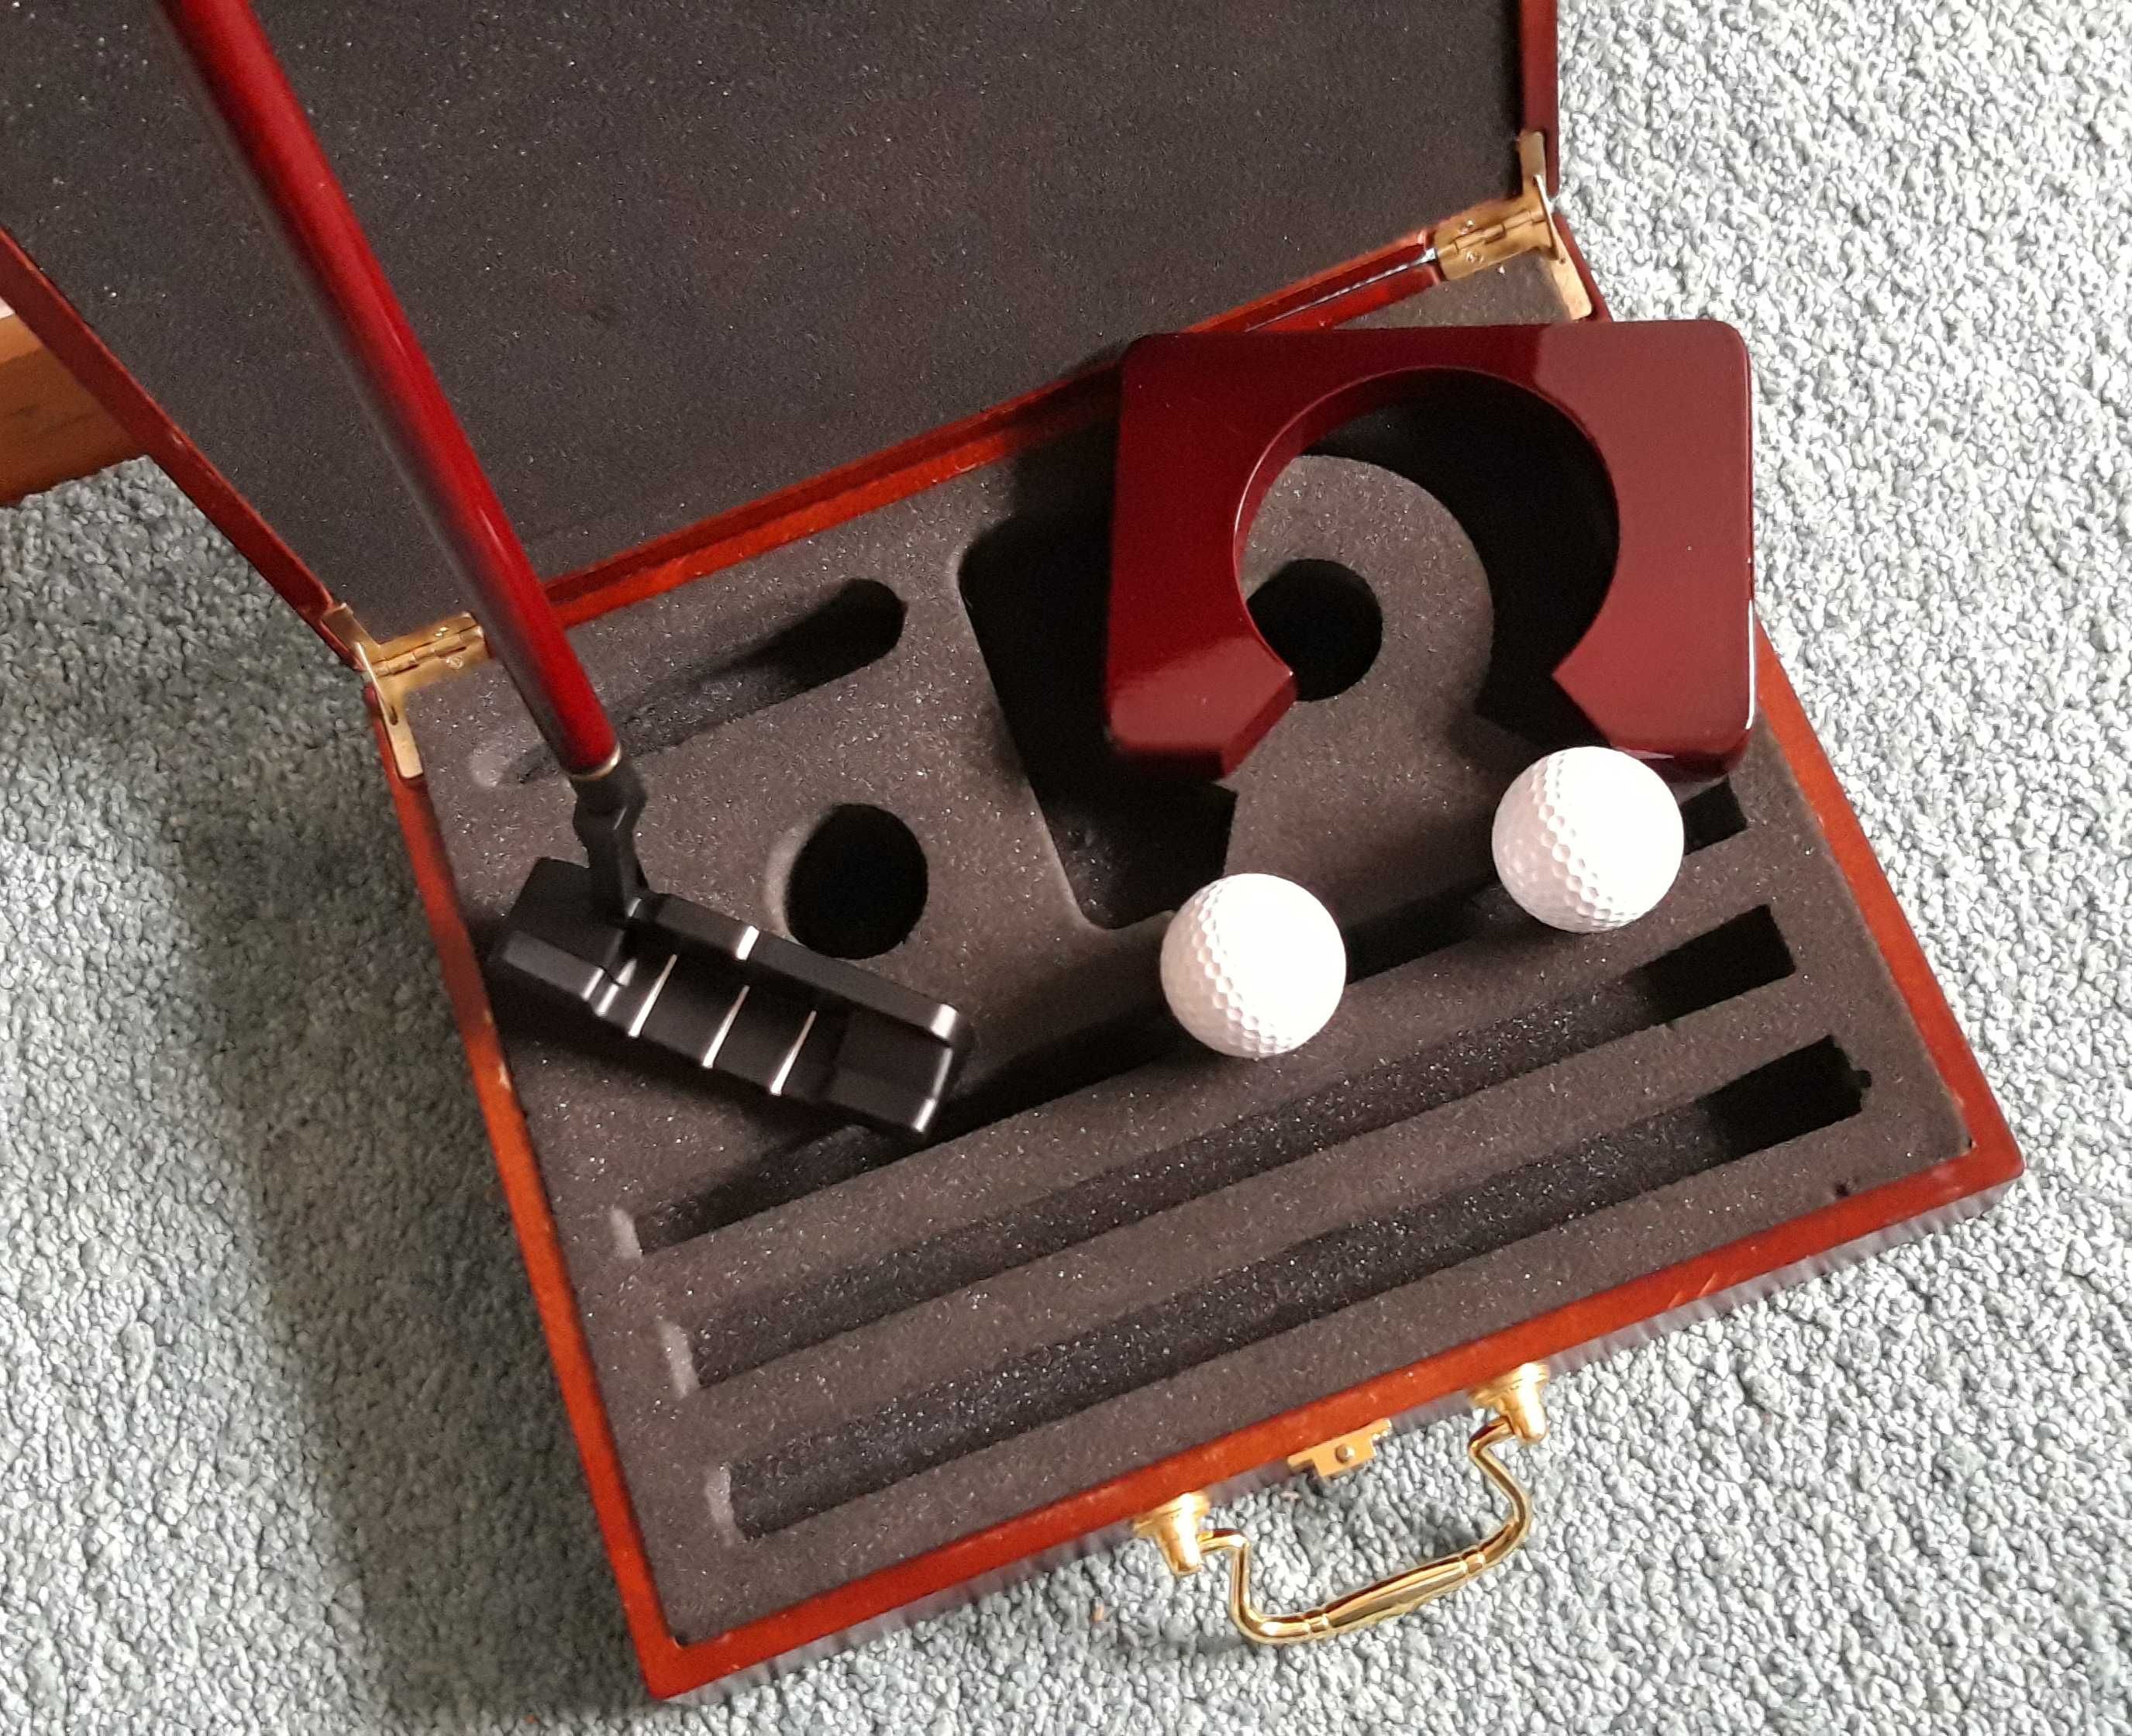 Caixa e kit prática de golfe - Artigo VINTAGE.